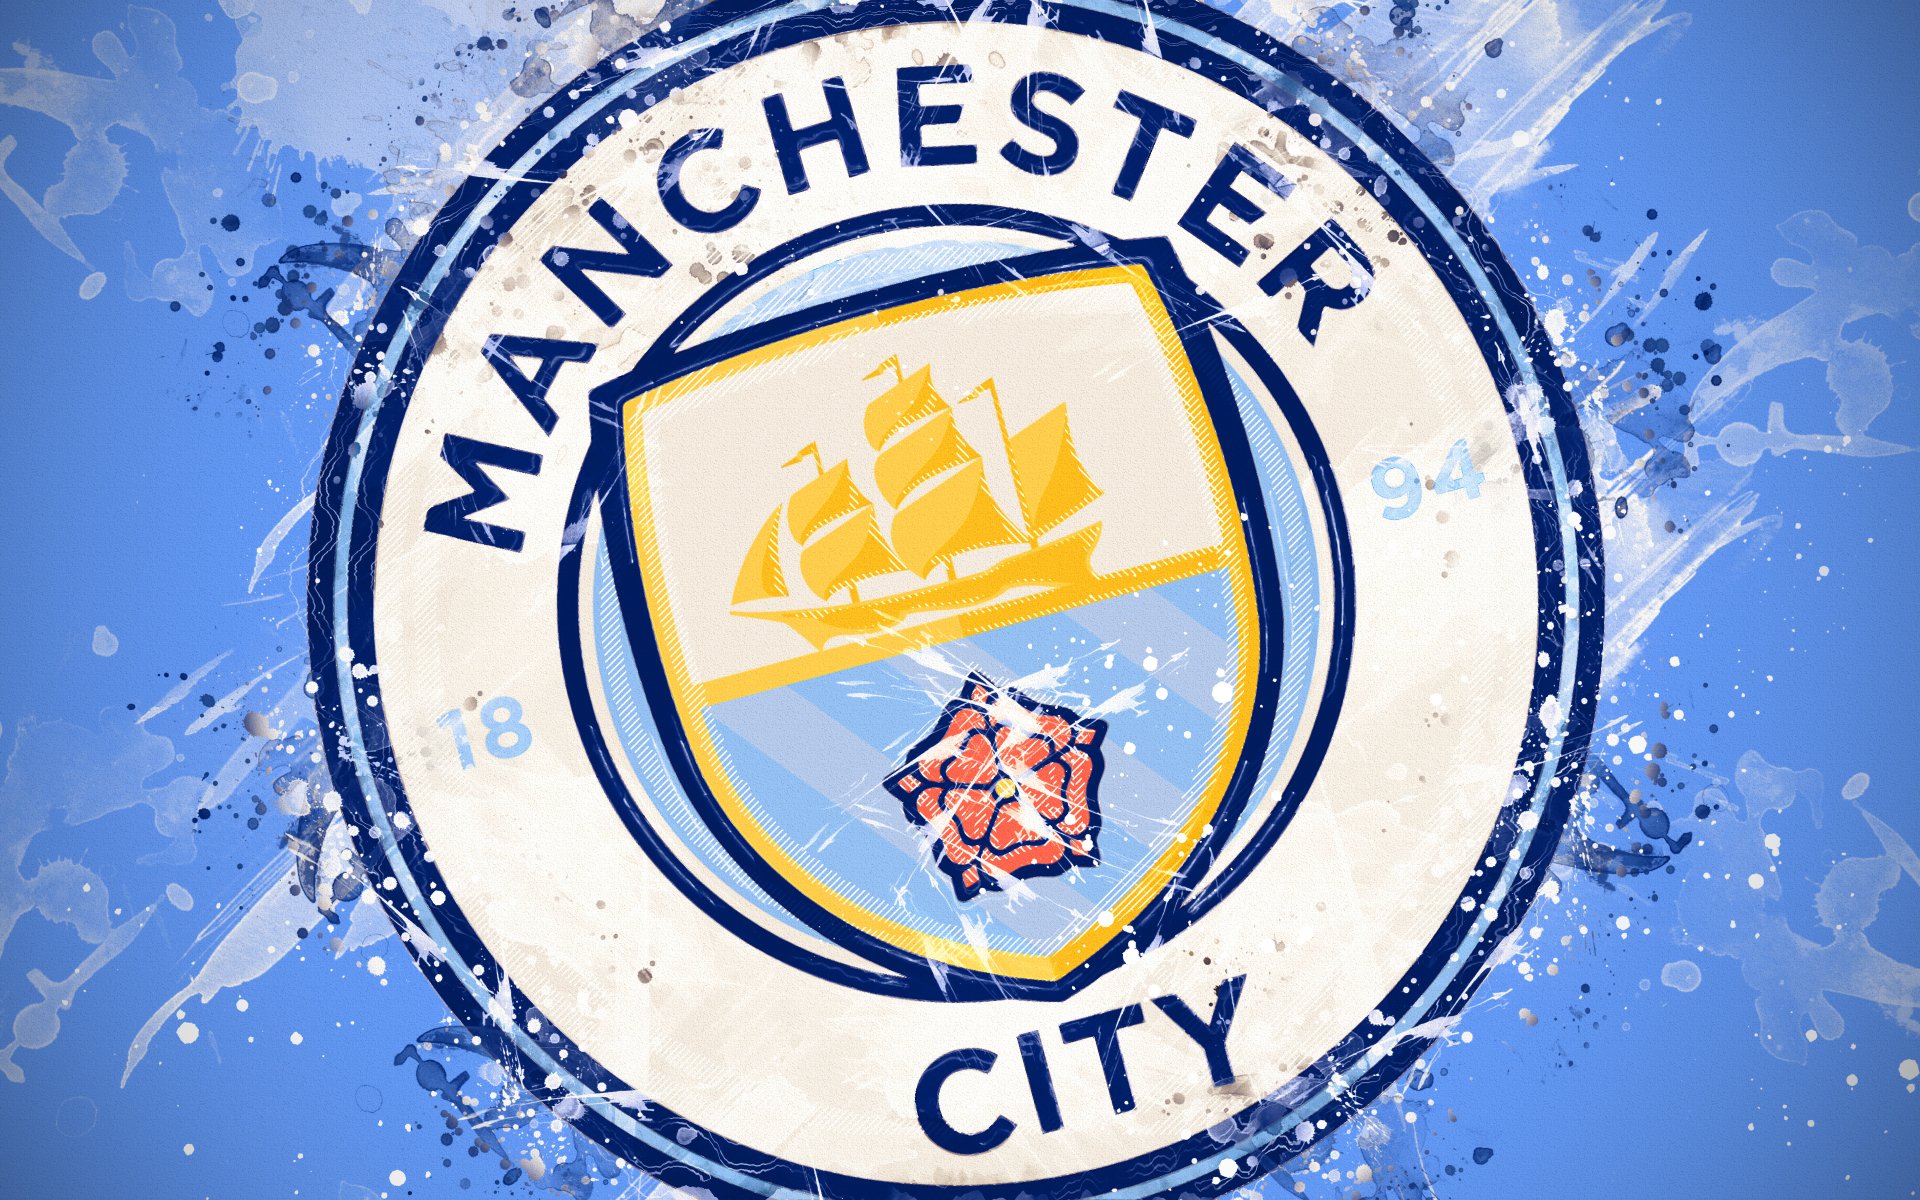 Logo Manchester City: Sự xuất hiện của logo Manchester City đem đến cho người hâm mộ không chỉ cảm giác tự hào mà còn là niềm tin vào sức mạnh của đội bóng. Hãy trang trí màn hình của bạn với những logo Manchester City đẹp và đầy sức cuốn hút, tôn vinh niềm đam mê và lòng yêu thương với đội bóng xứ sở sương mù.